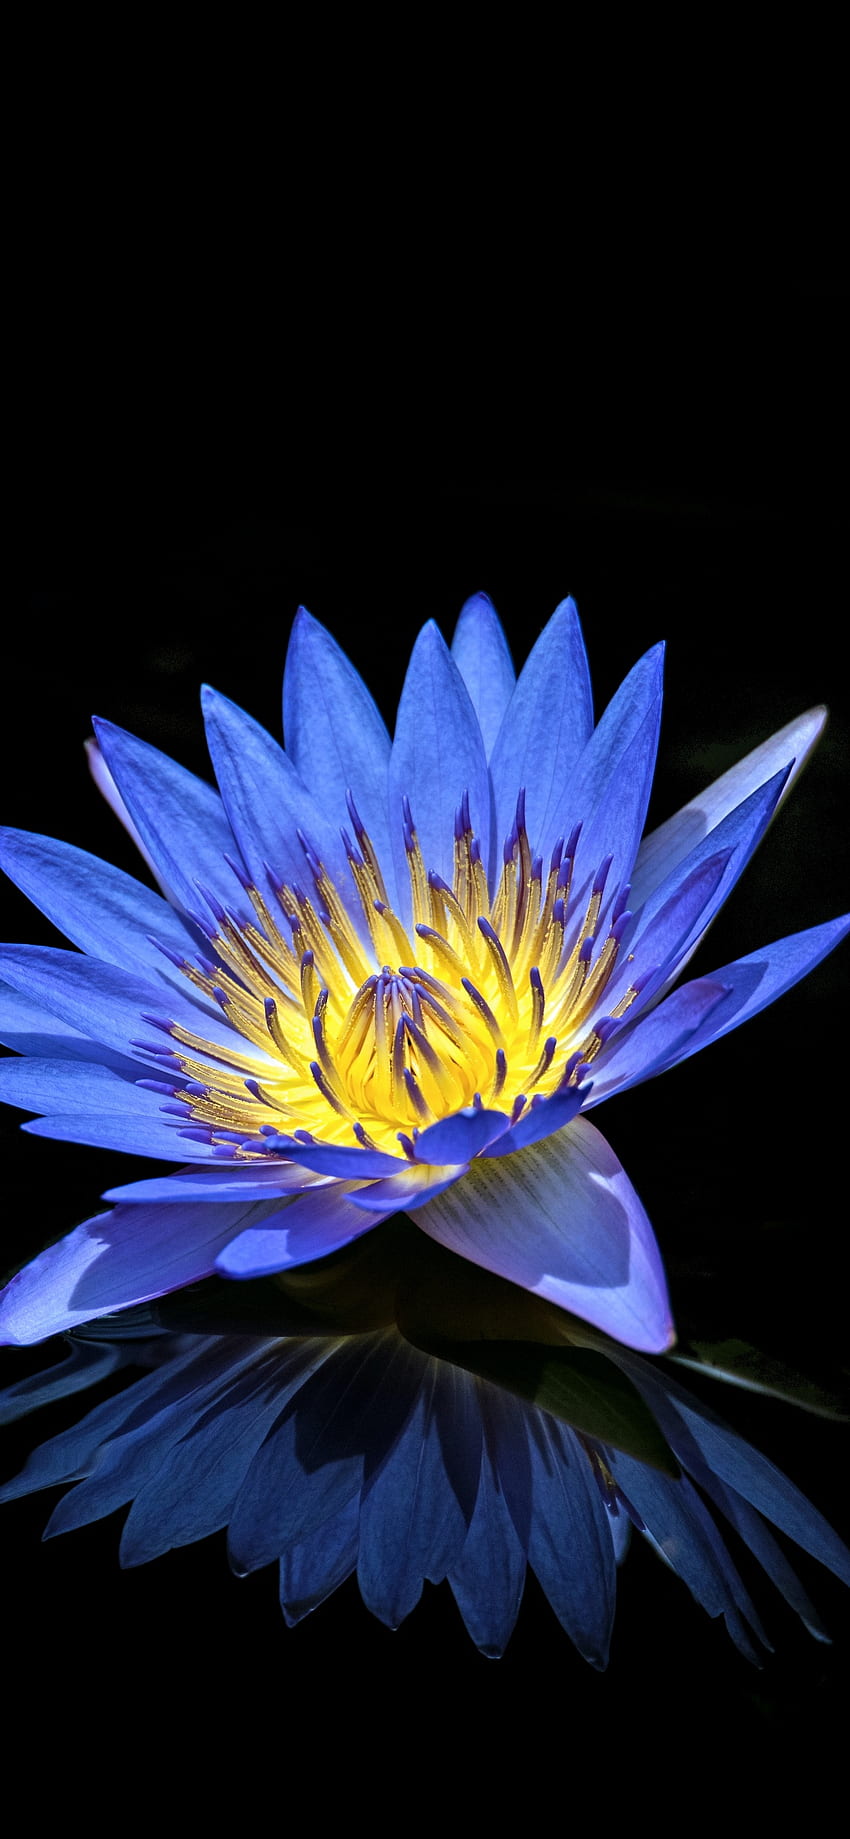 スイレン、青い花、黒の背景、反射、花、黒と青の花 iPhone HD電話の壁紙